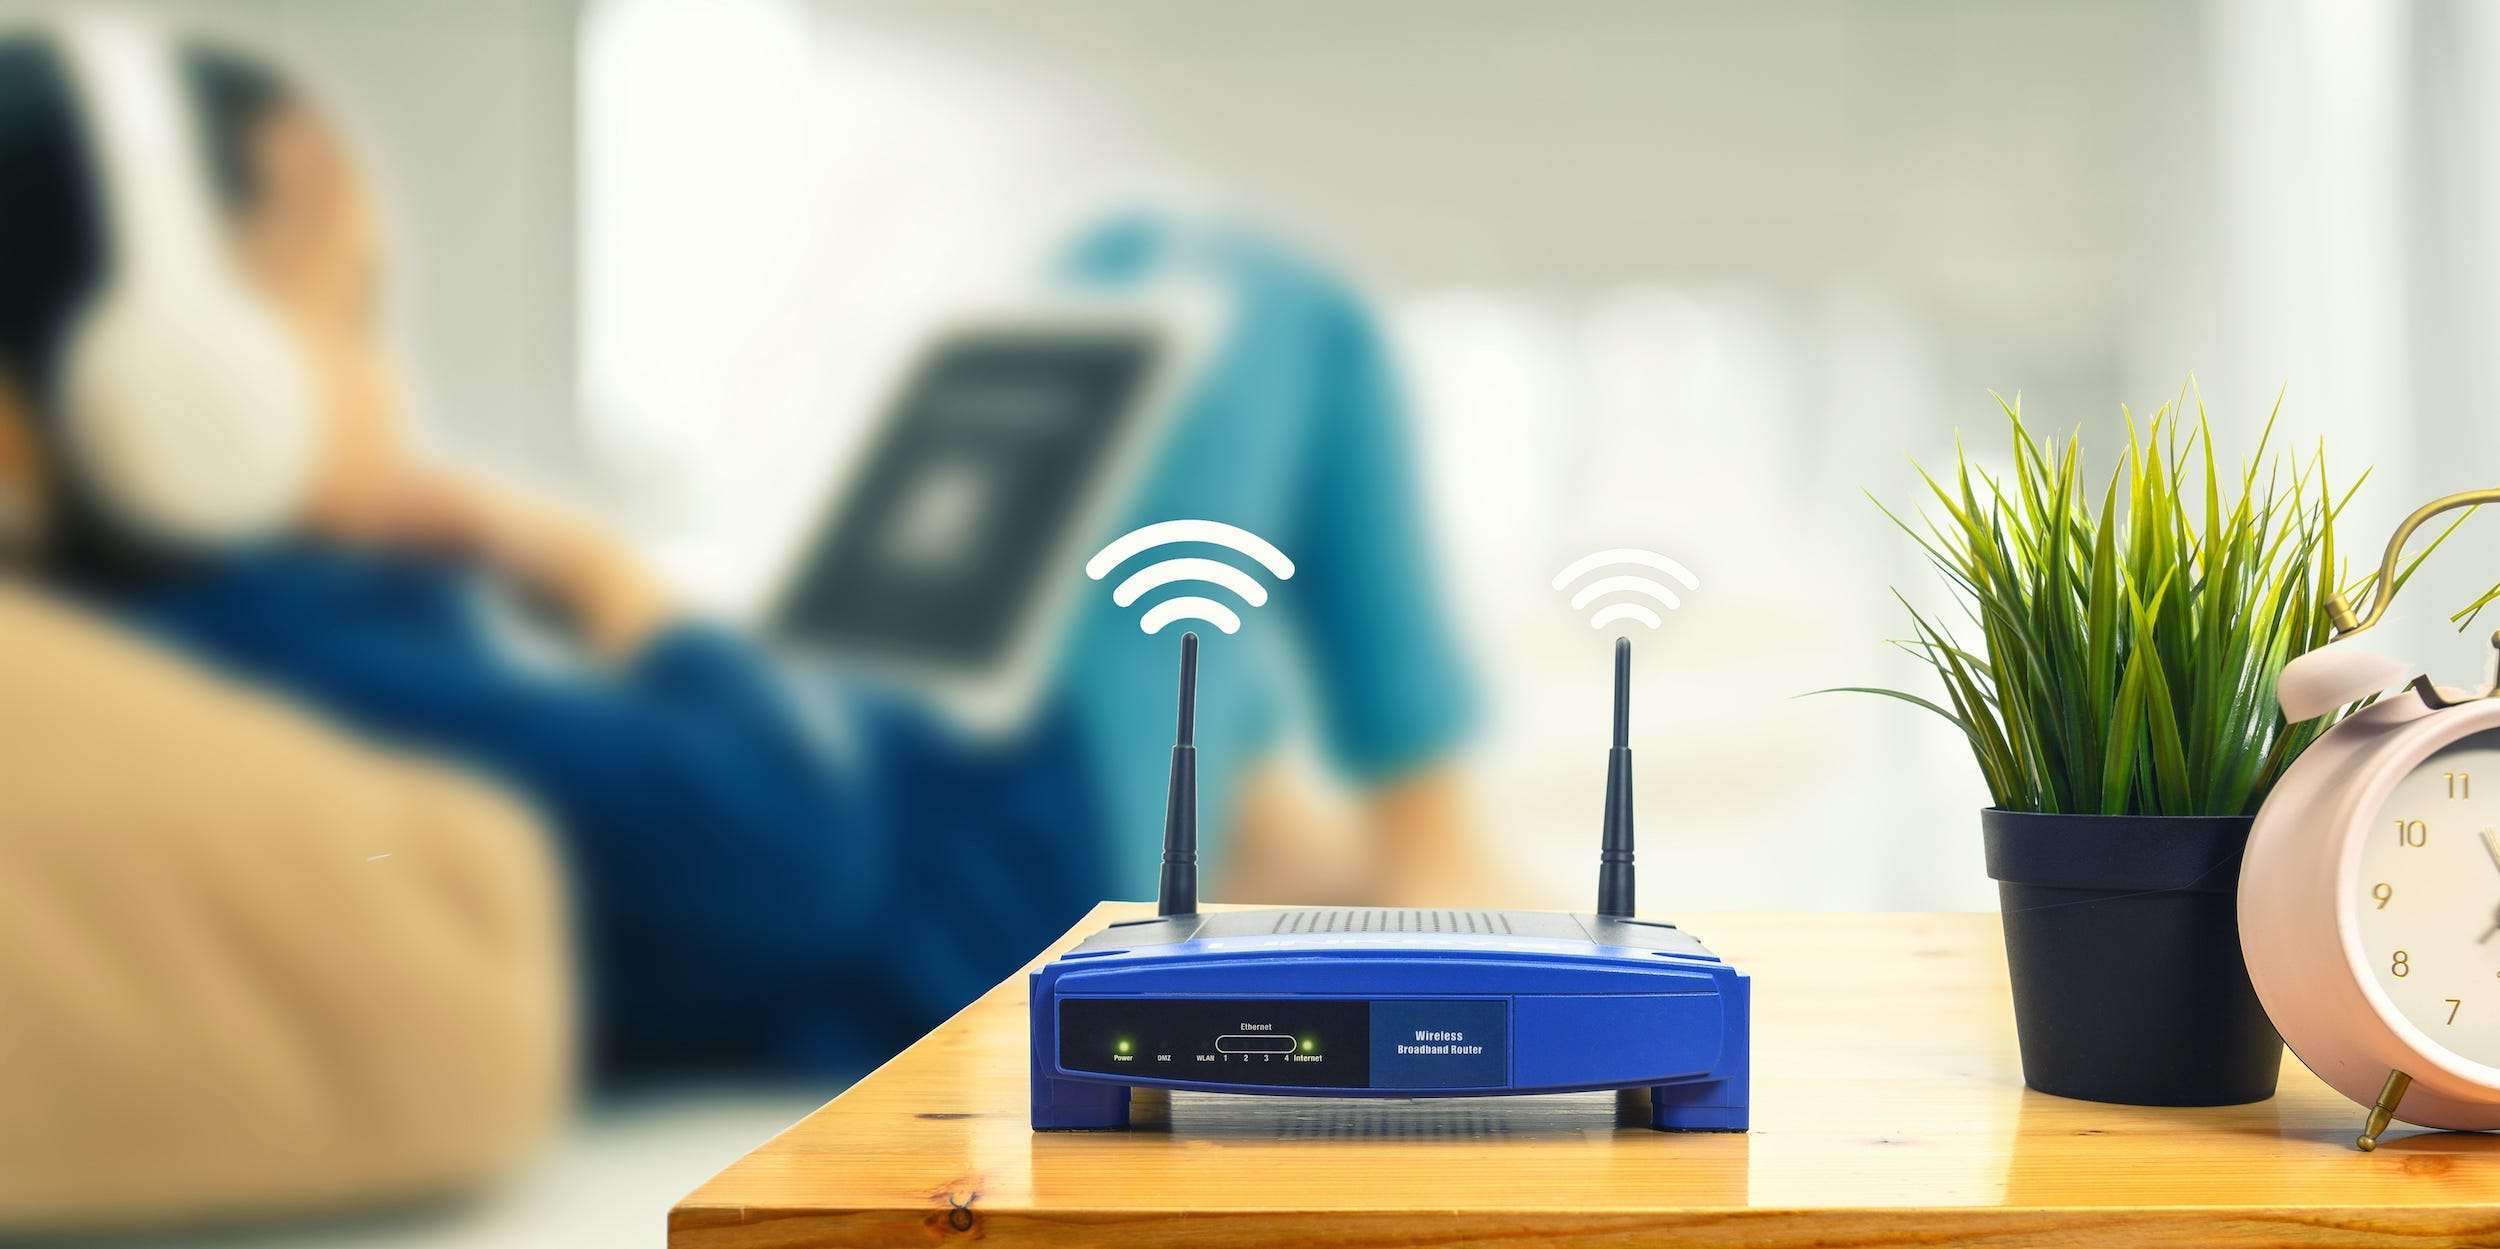 optimum modem vs router